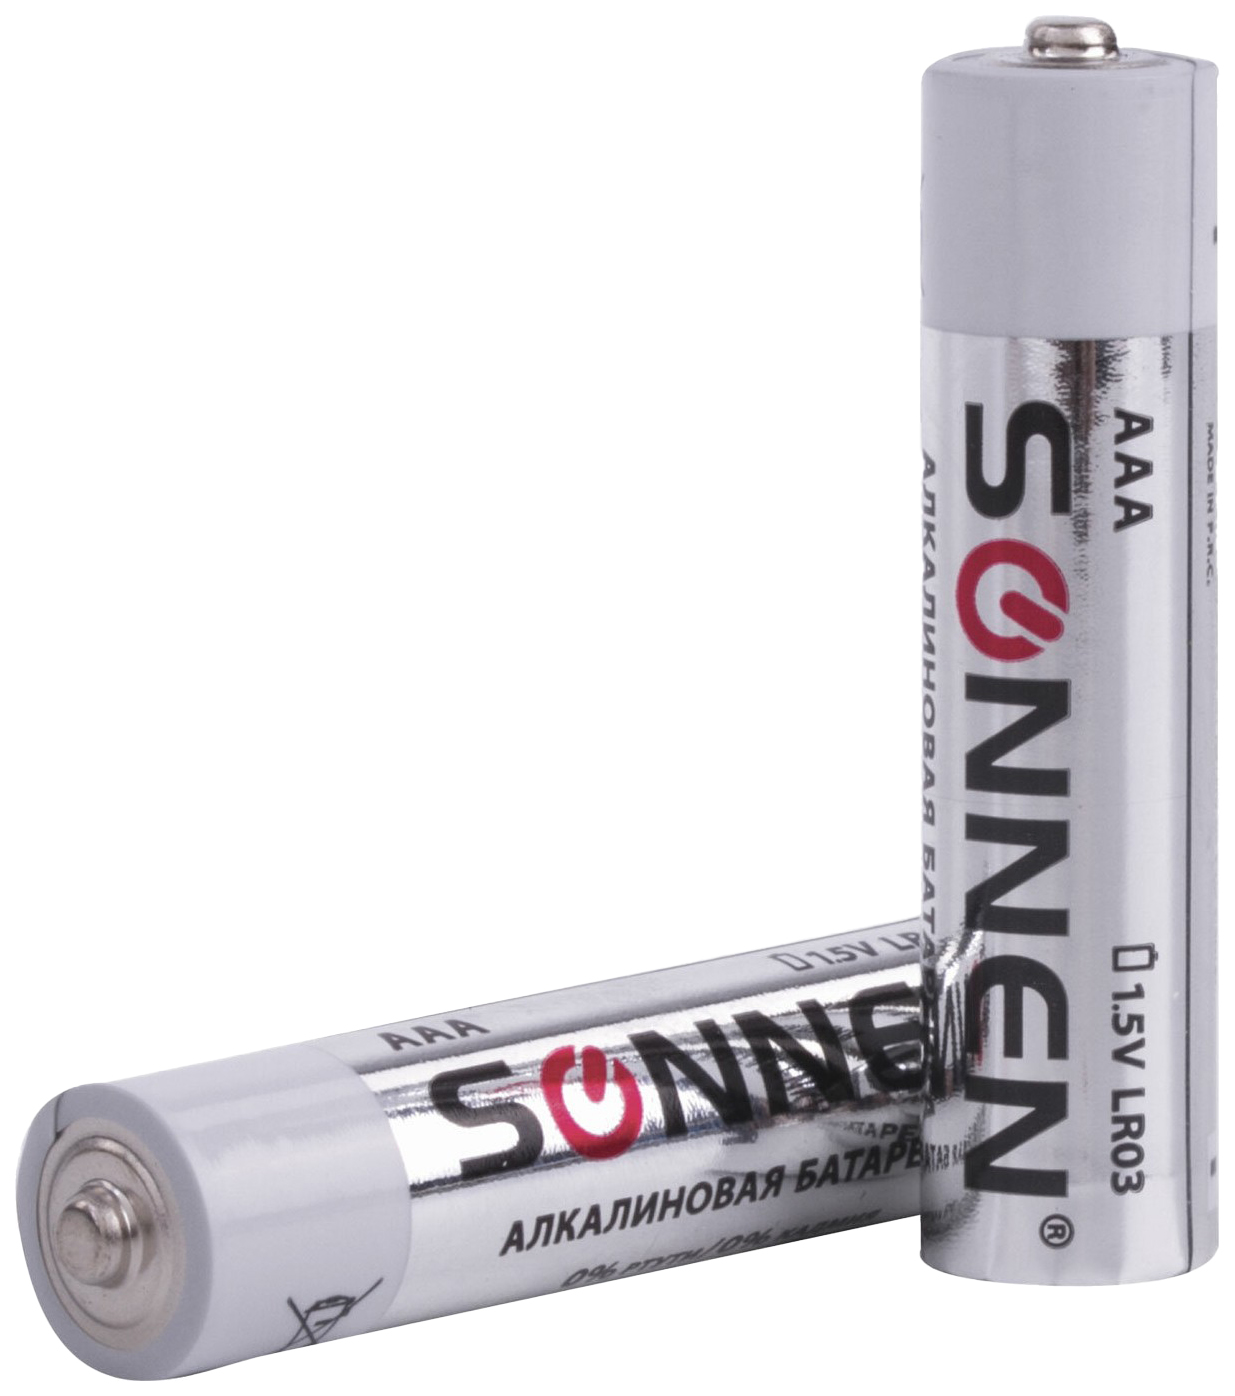 Батарея Sonnen 451089